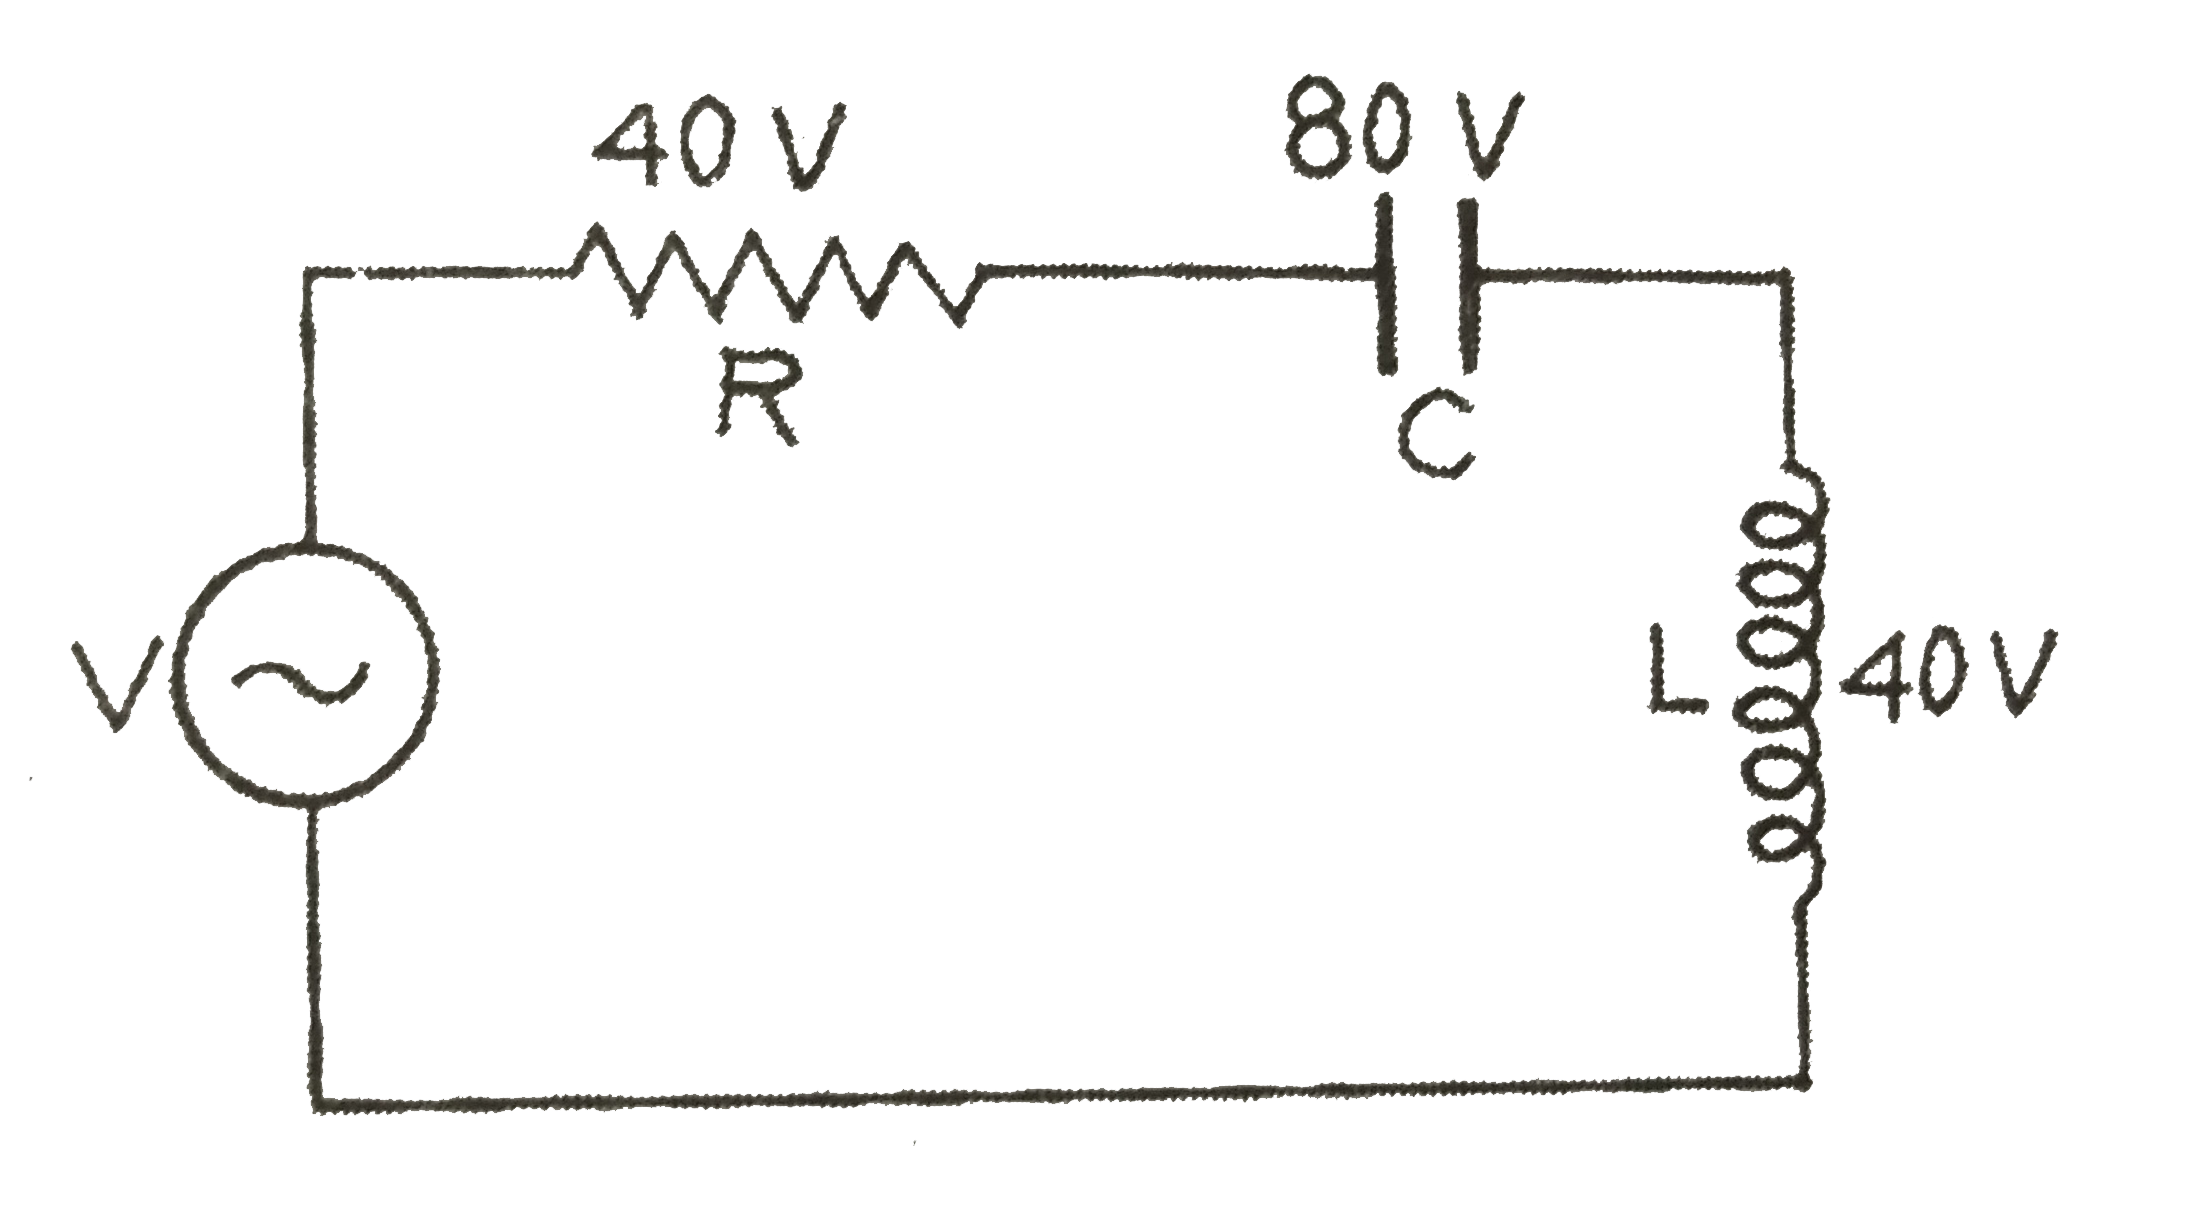 चित्र में प्रदर्शित प्रत्यावर्ती  धारा परिपथ में प्रतिरोध R, संधारित्र C तथा प्रेरक कुण्डली L के सिरों के बीच उपलब्ध विभवान्तर प्रदर्शित किये गए हैं।प्रत्यावर्ती धारा स्रोत के विद्युत वाहक बल की गणना कीजिए।